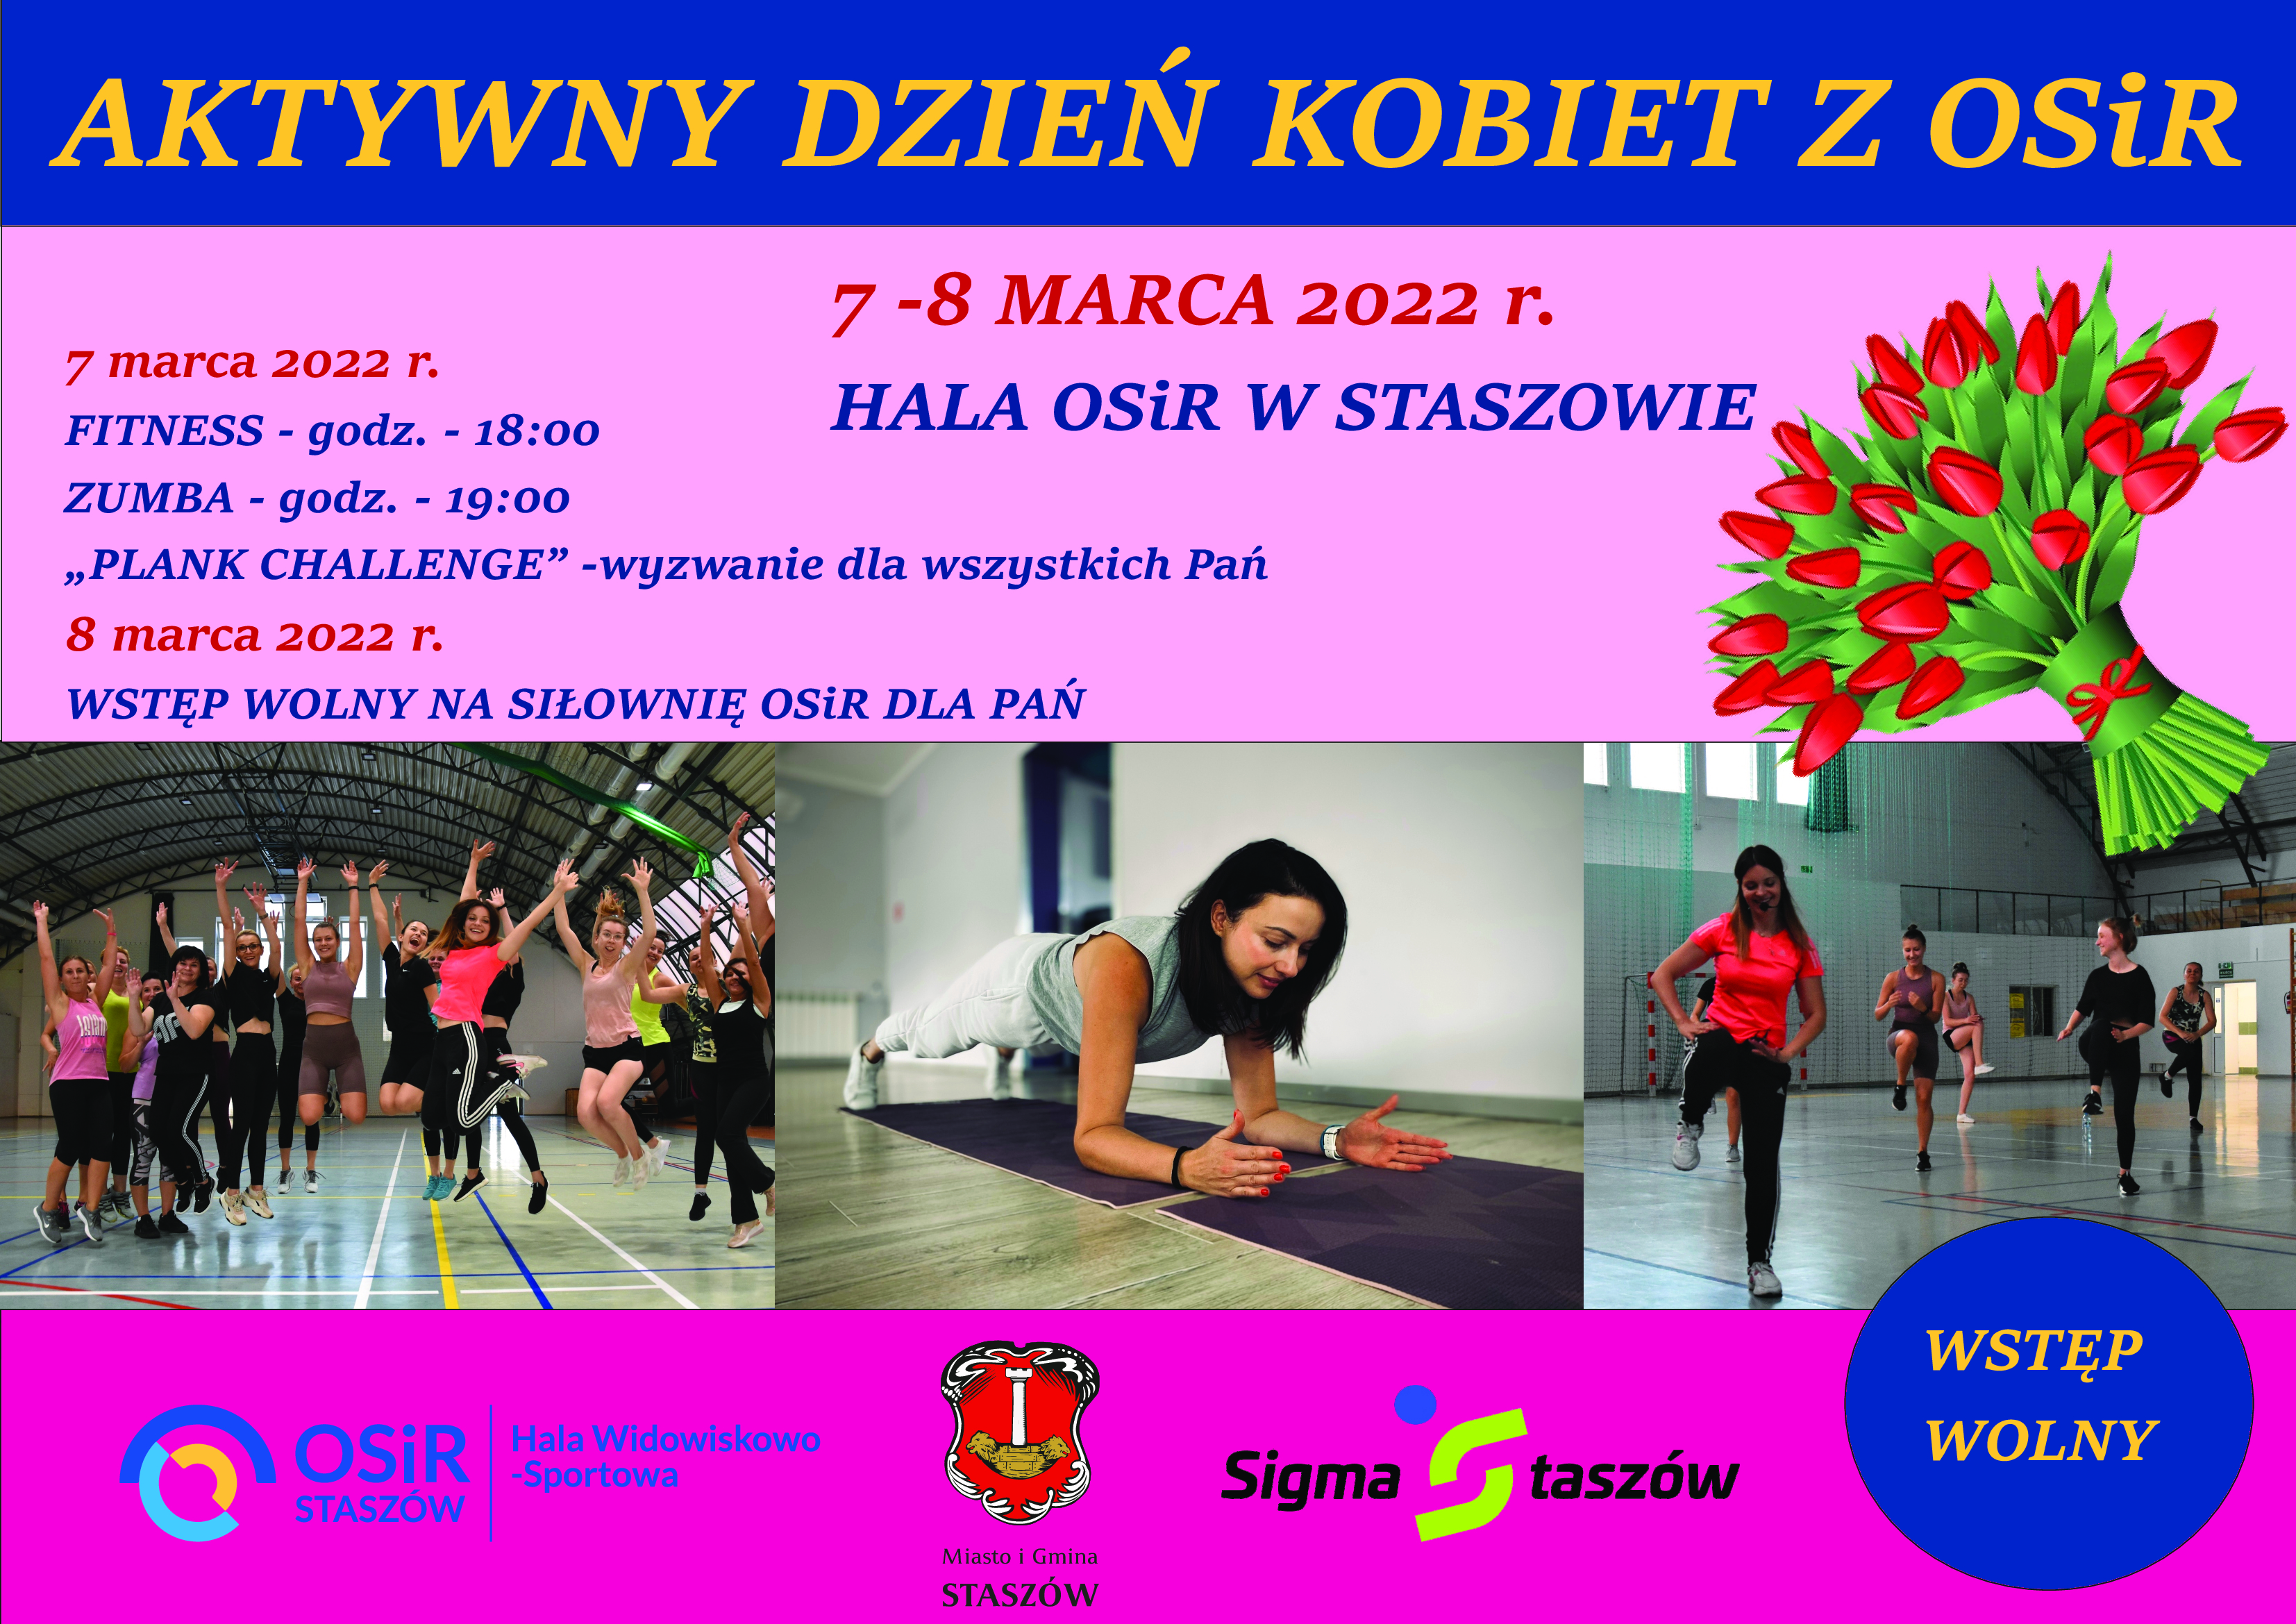 Plakat informacyjny: 7-8 marca 2022 r., Hala OSiR w Staszowie  7 marca 2022 r.: Fitness – godz. 18:00 Zumba – godz. 19:00 „Plank challenge” - wyzwanie dla wszystkich Pań  8 marca 2022 r.: Wstęp wolny na siłownię OSiR dla Pań  Już dzisiaj zapraszamy wszystkie aktywne kobiety do udziału w Aktywnym Dniu Kobiet z OSiR zorganizowanym przez Ośrodek Sportu i Rekreacji w Staszowie wspólnie z Urzędem Miasta i Gminy w Staszowie oraz Stowarzyszeniem Sigma Staszów. Zachęcamy do aktywnego spędzenia tego wyjątkowego czasu. Dbajmy o siebie i swoje samopoczucie. Umilmy sobie czas treningiem.  Udział w wydarzeniu jest bezpłatny.